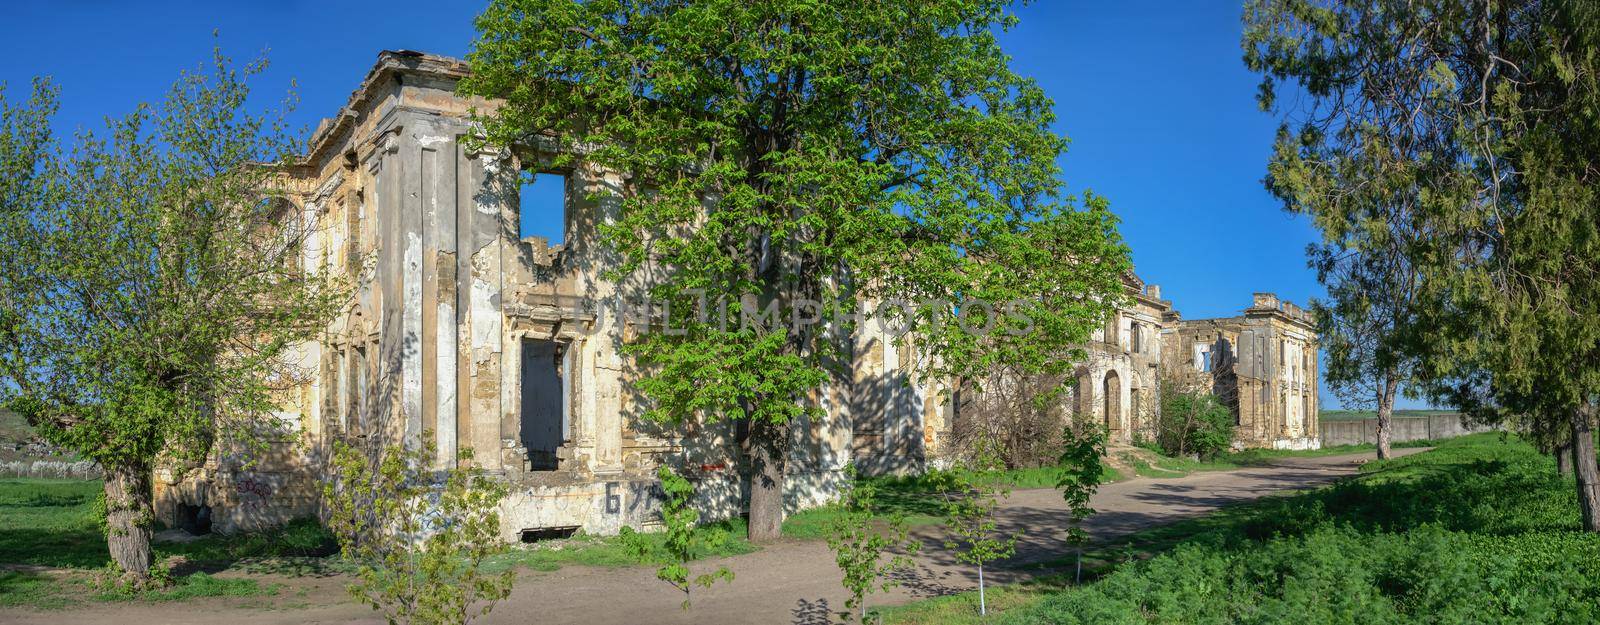 Dubiecki manor in Vasylievka, Odessa region, Ukraine by Multipedia